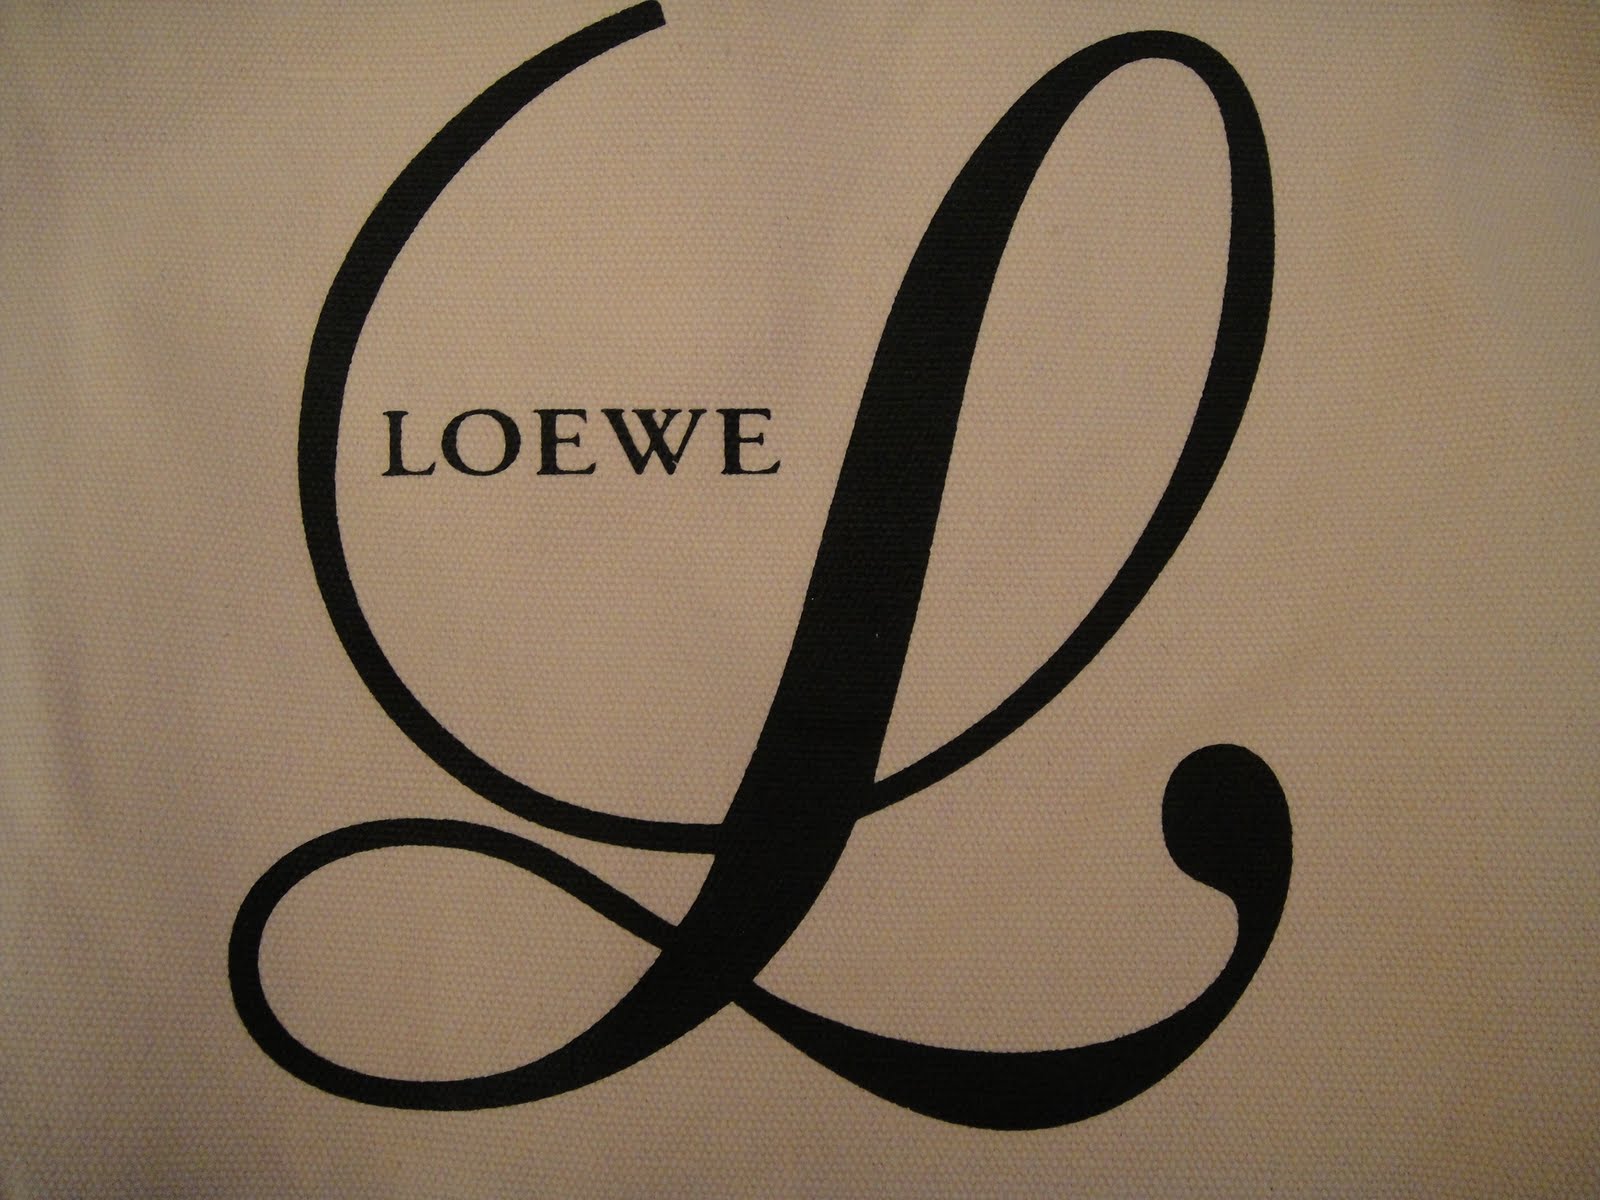 Loewe, marca de distinción y elegancia